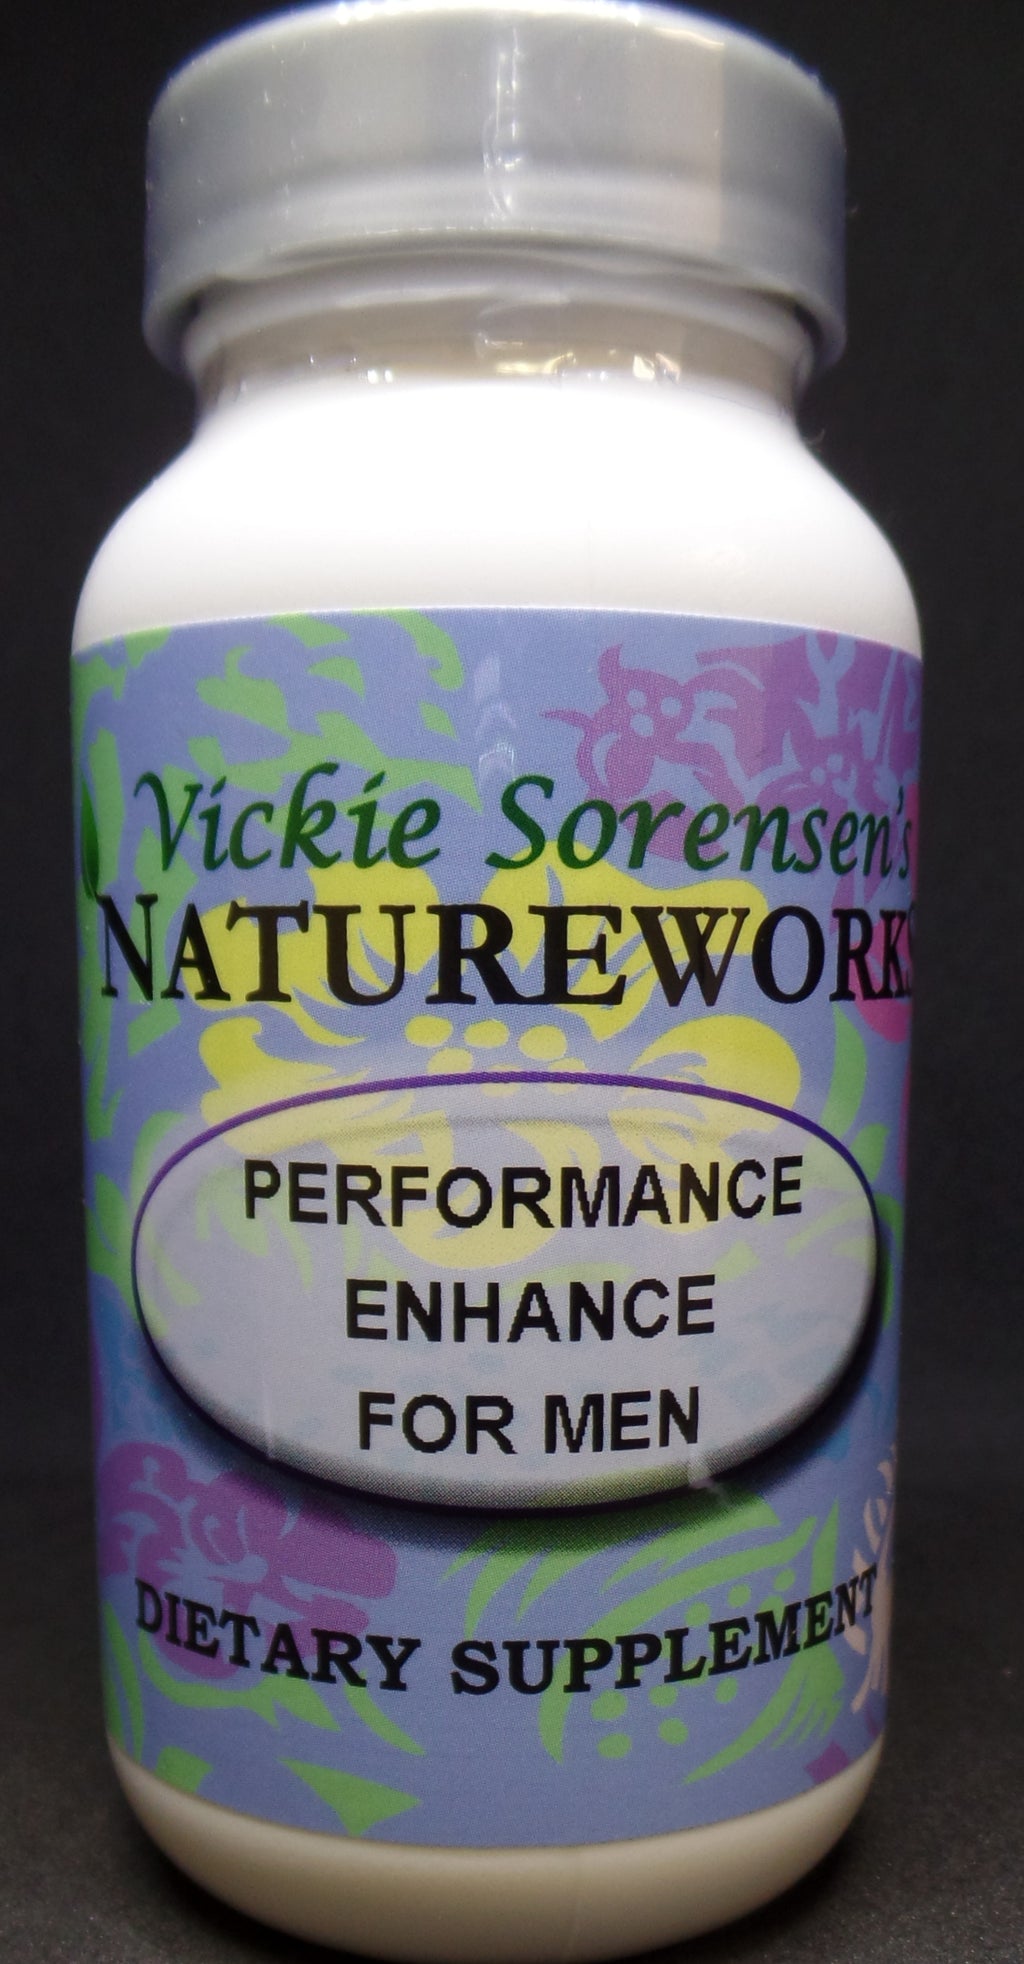 Performance Enhance For Men